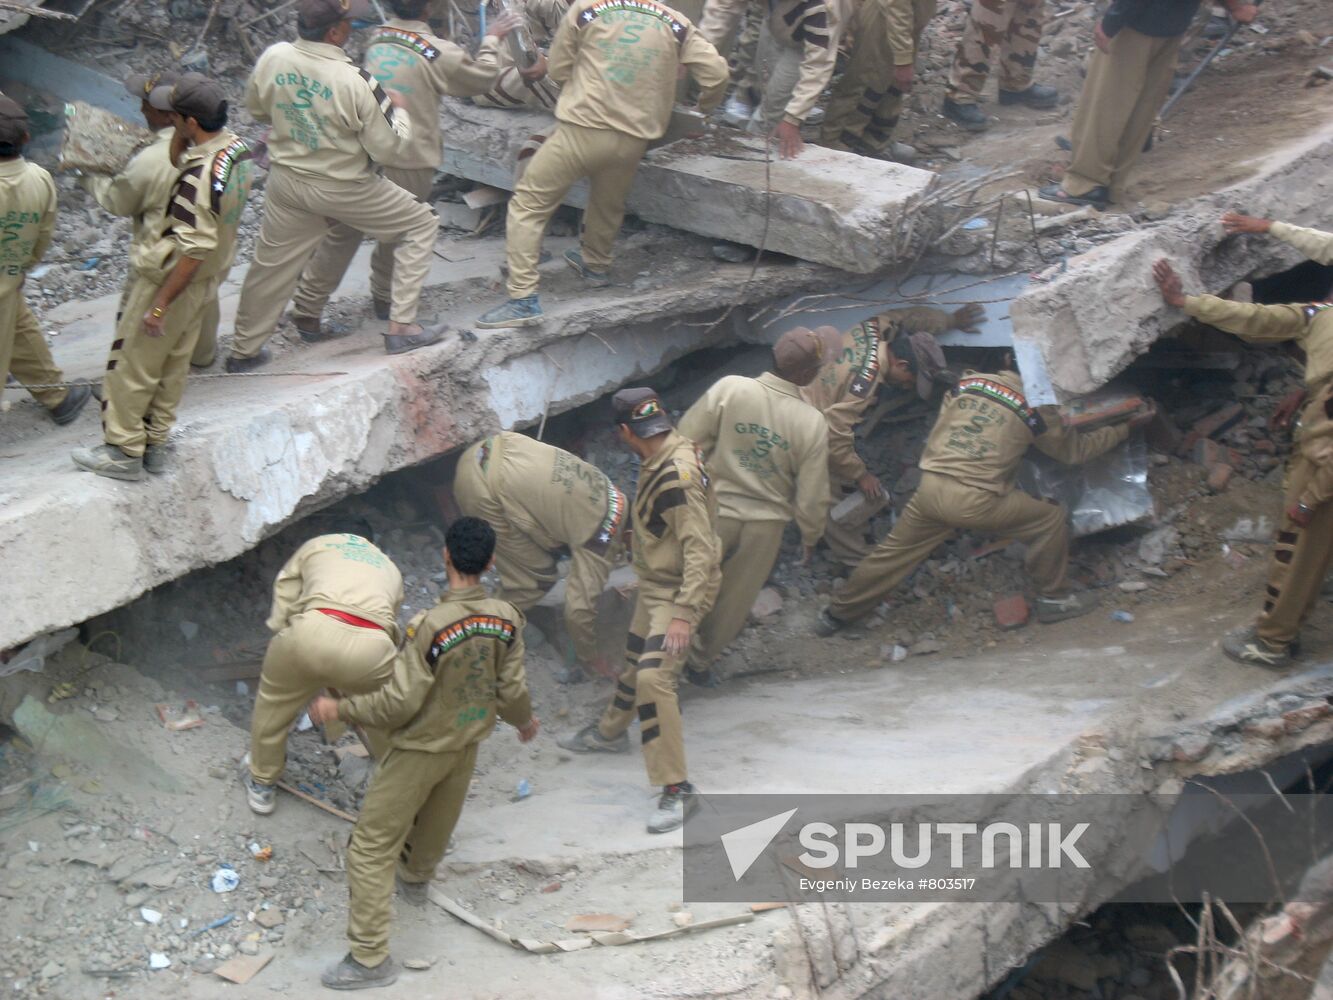 Apartment building collapses in New Delhi